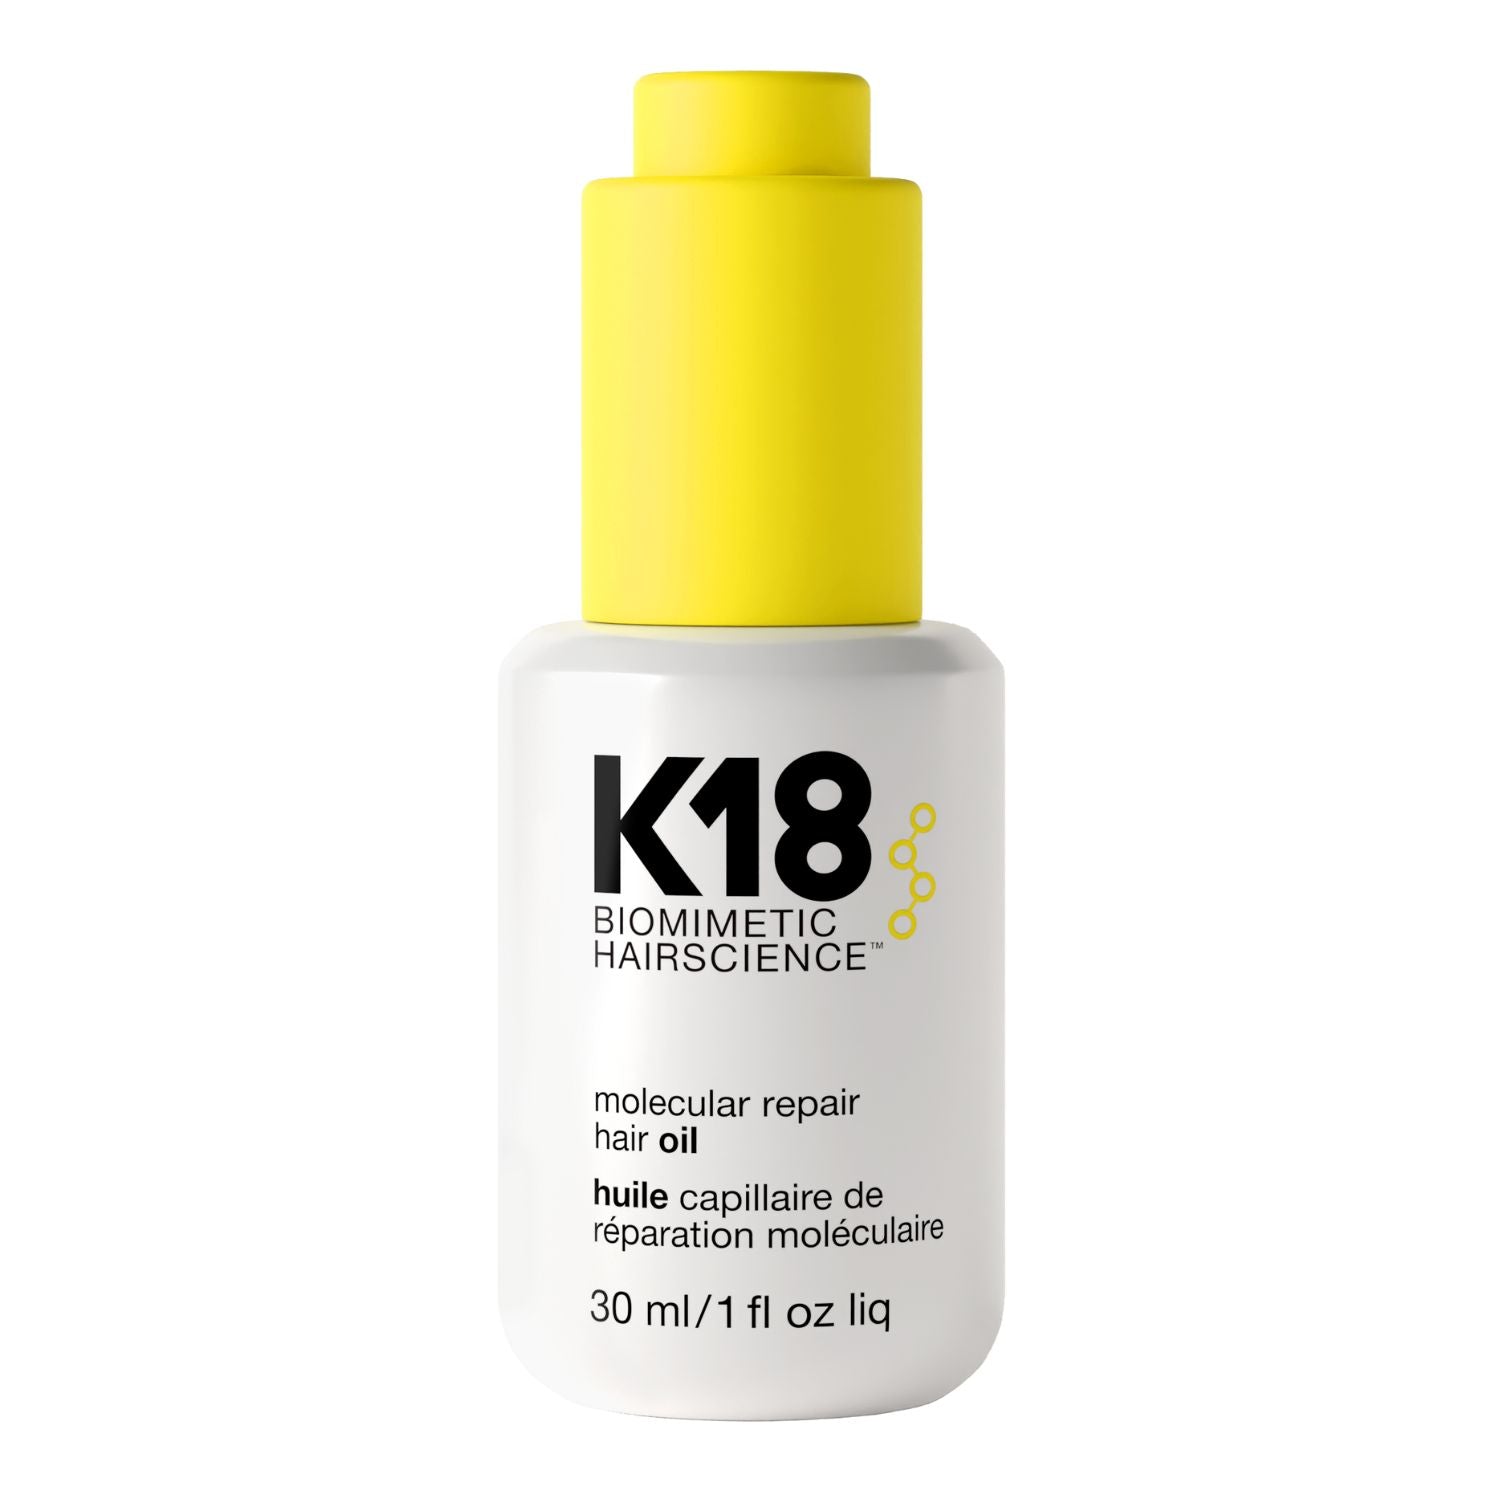 K18 K18 | Molecular Repair Hair Oil | 30ml - SkinShop